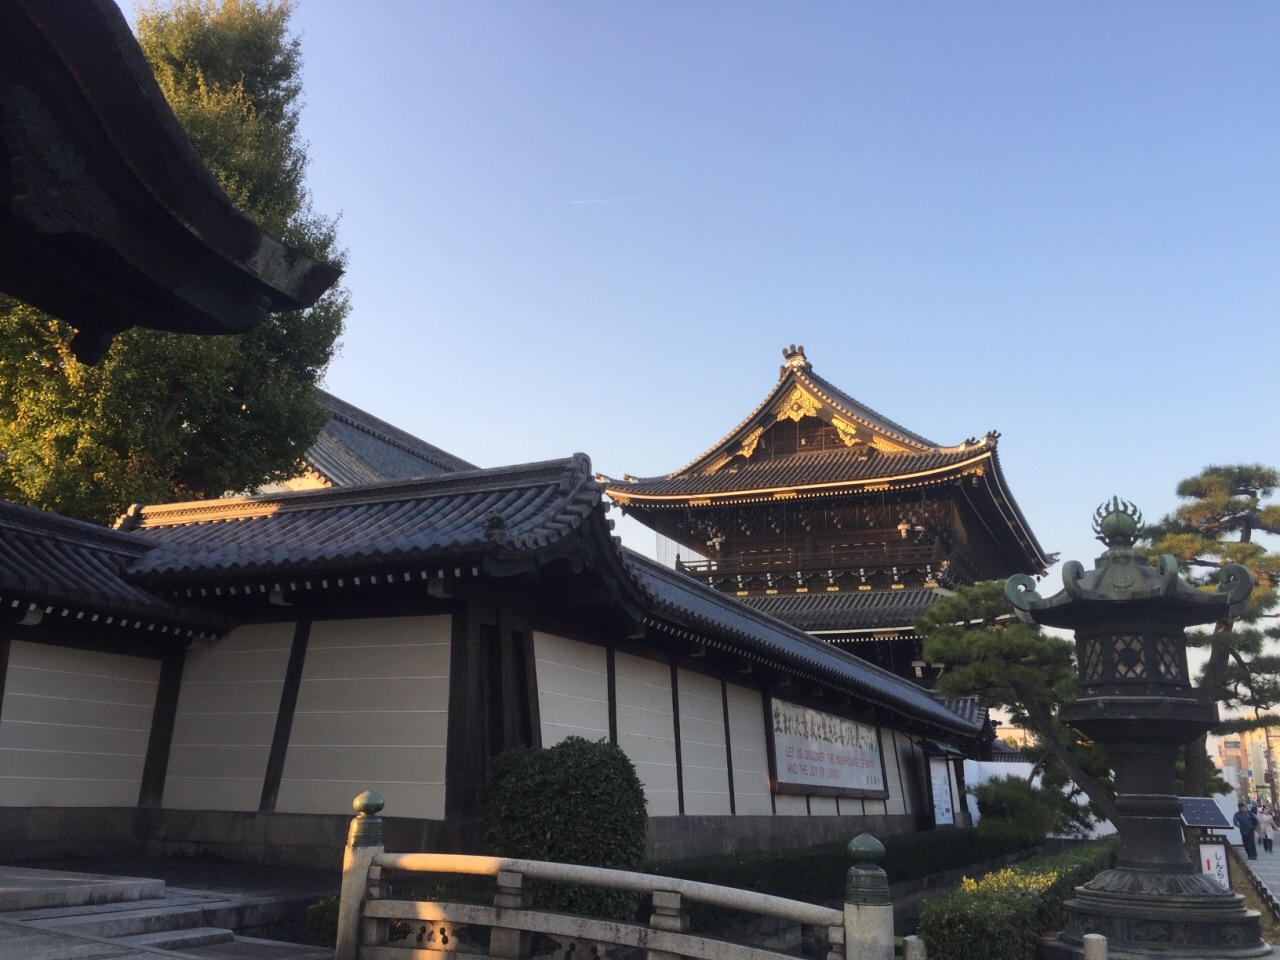 【携程攻略】京都本能寺景点,本能寺虽然不是热门景点,但是还是非常值